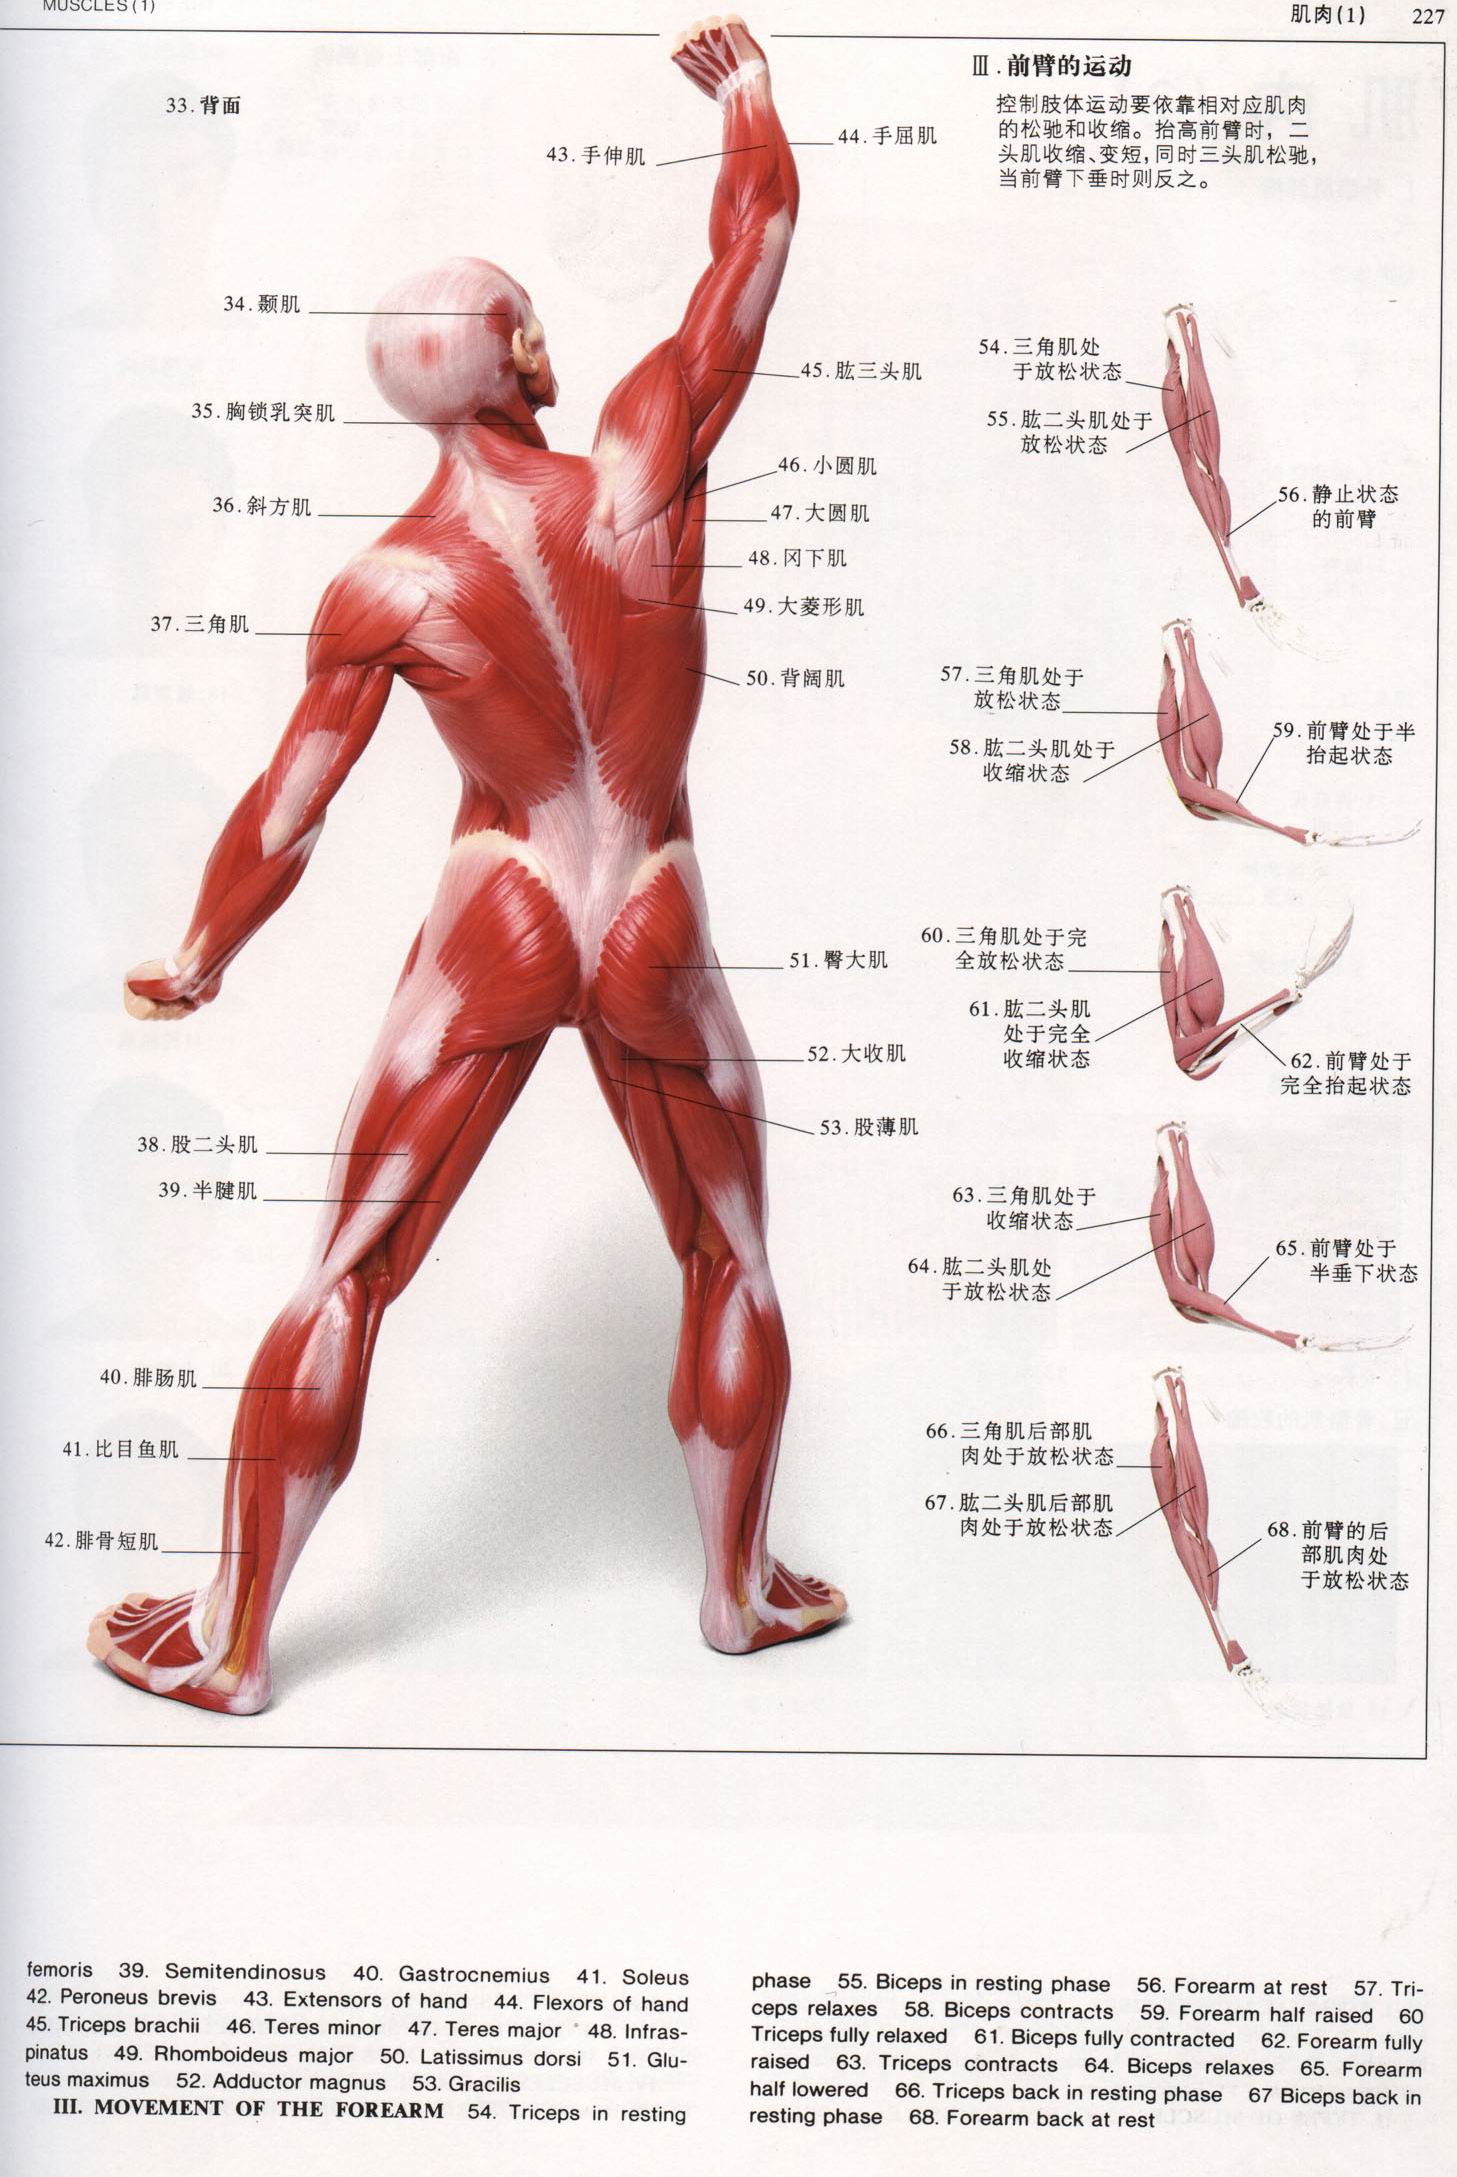 发一些肌肉方面的图片,方便大家做人体肌肉建模以及贴图绘制用!